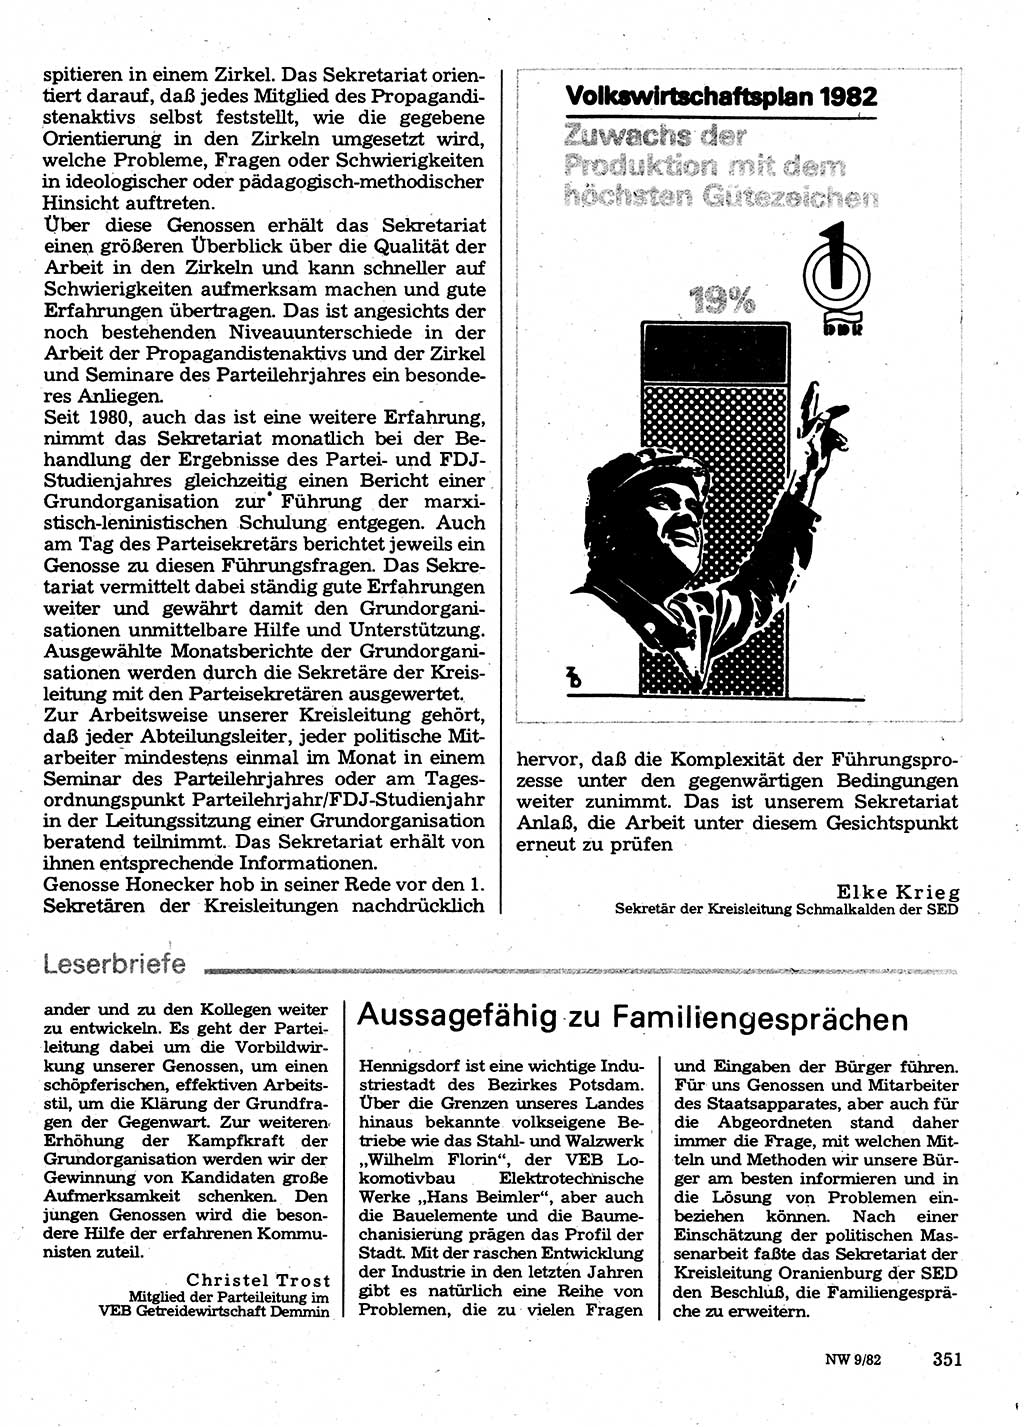 Neuer Weg (NW), Organ des Zentralkomitees (ZK) der SED (Sozialistische Einheitspartei Deutschlands) für Fragen des Parteilebens, 37. Jahrgang [Deutsche Demokratische Republik (DDR)] 1982, Seite 351 (NW ZK SED DDR 1982, S. 351)